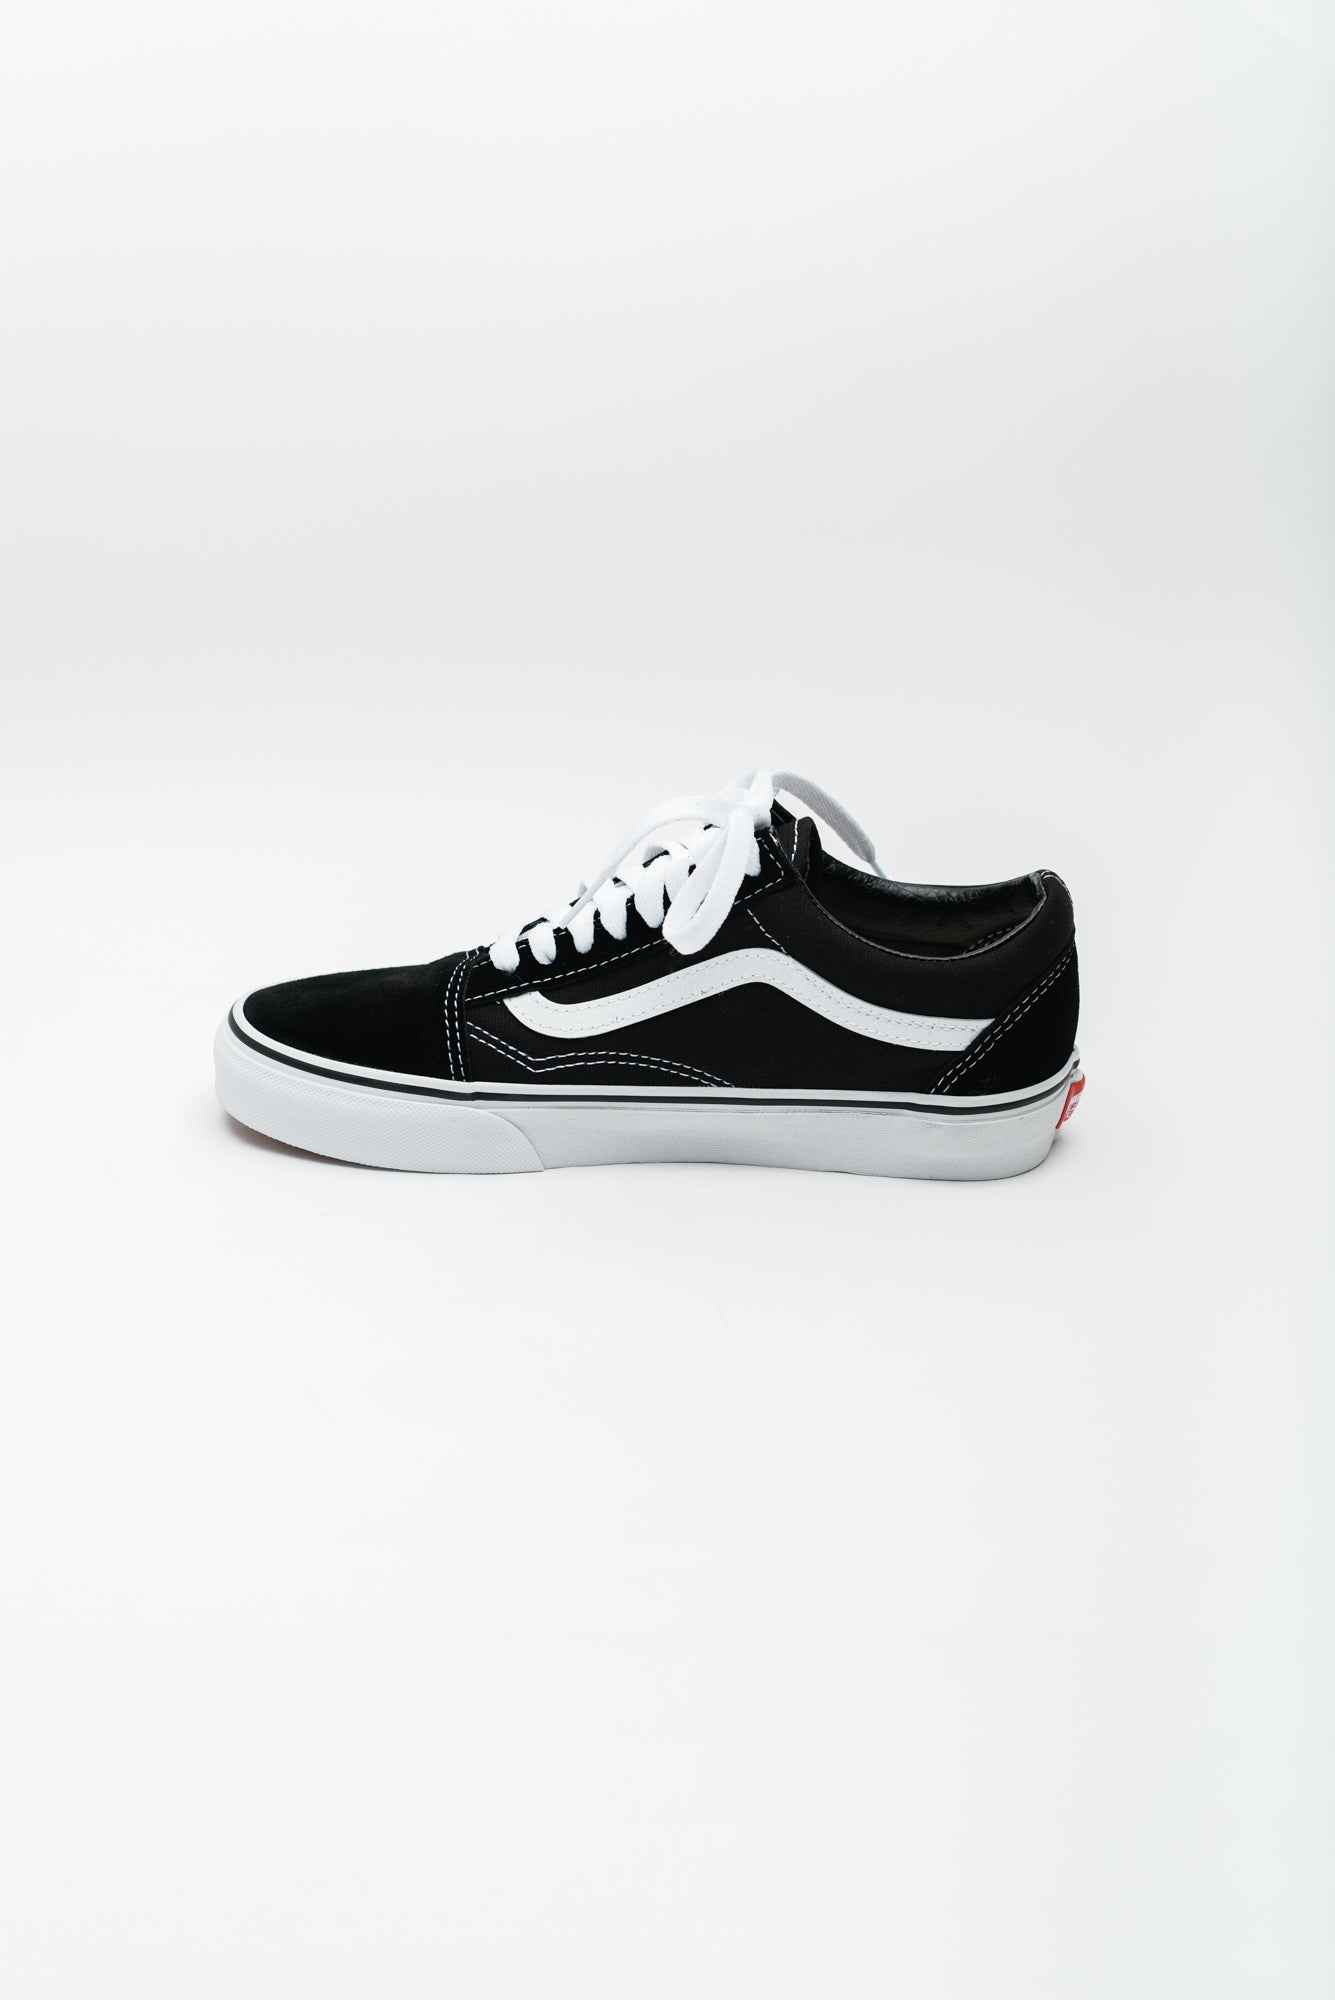 Load image into Gallery viewer, Vans Men&amp;#39;s Old Skool Sneaker - Black/White
